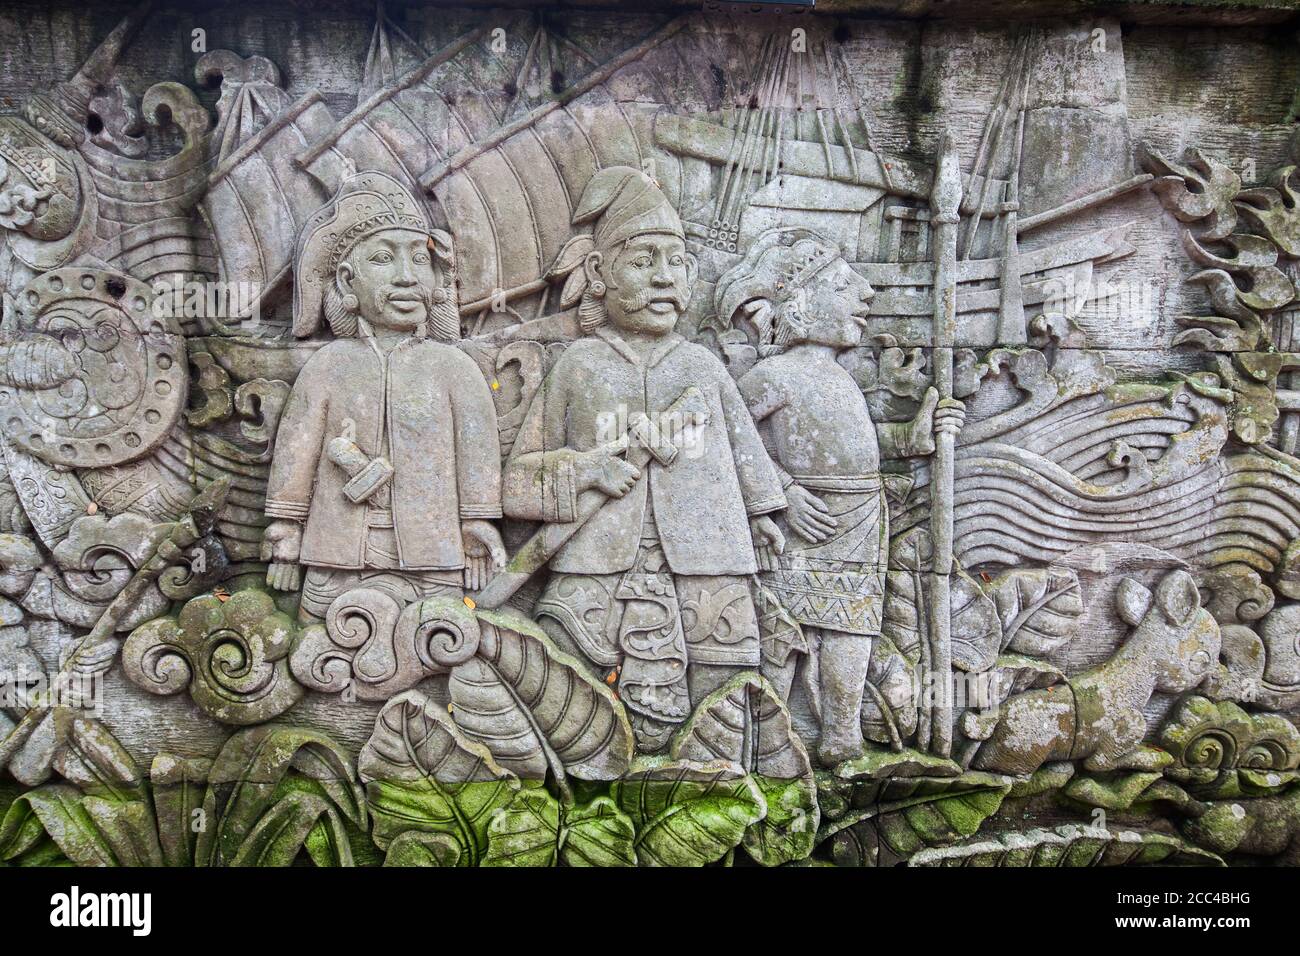 Intagliatura delle pareti che raffigura scene storiche di Singapore pre-coloniale a Fort Canning Park, Singapore. Foto Stock